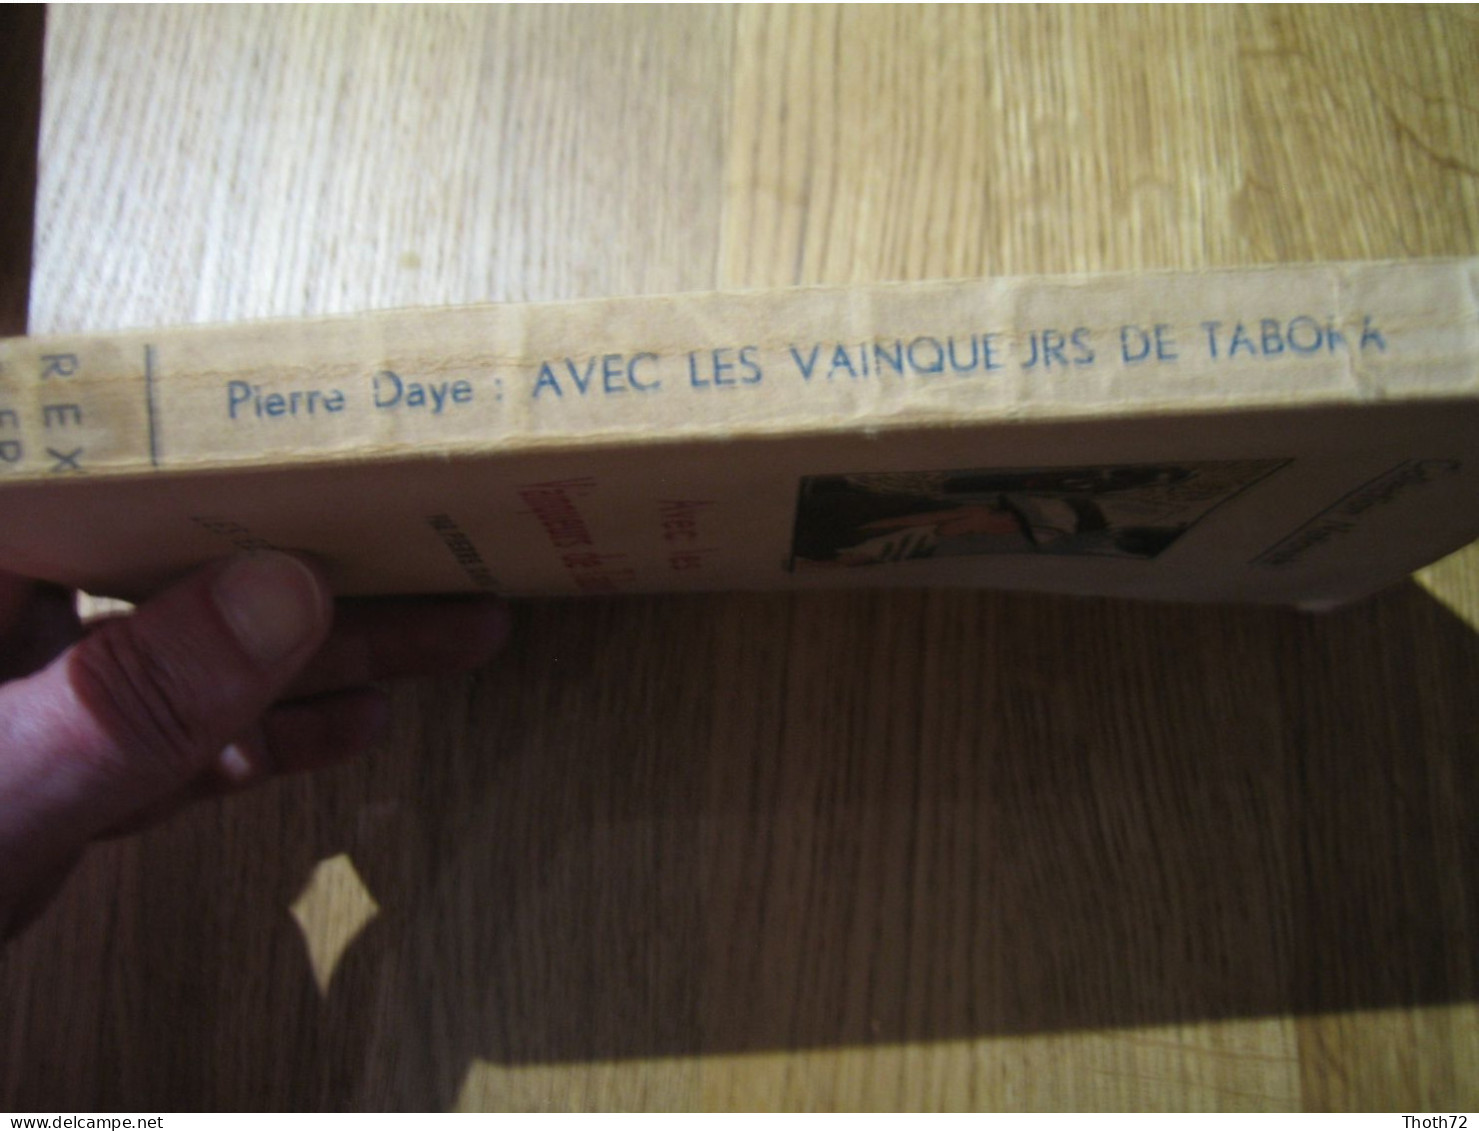 AVEC LES VAINQUEURS DE TABORA. Pierre DAYE. 1935. Les Editions REX. Léon DEGRELLE. - Frans